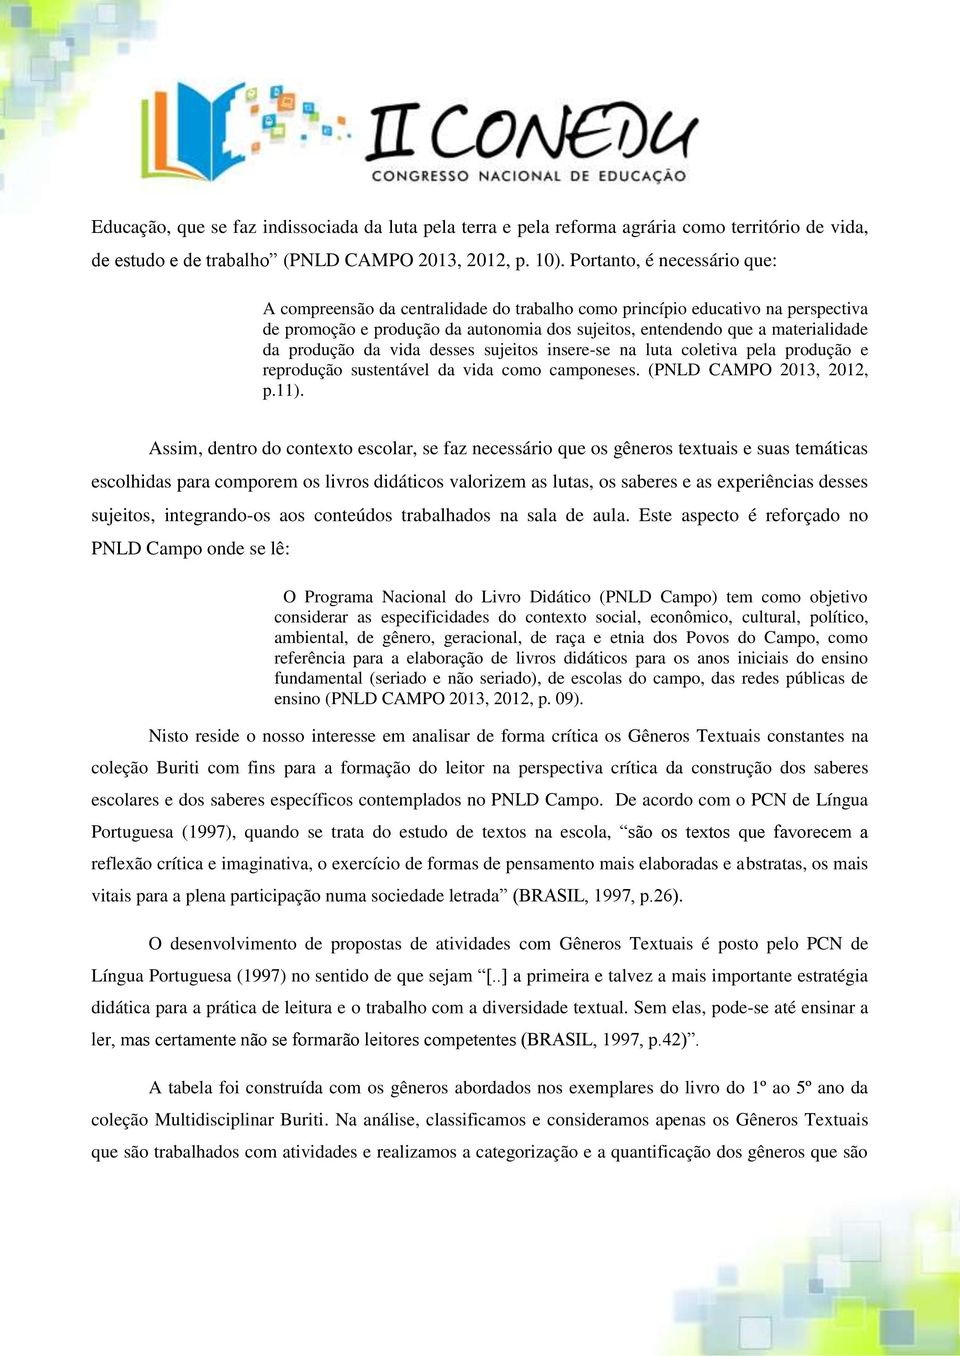 produção da vida desses sujeitos insere-se na luta coletiva pela produção e reprodução sustentável da vida como camponeses. (PNLD CAMPO 2013, 2012, p.11).